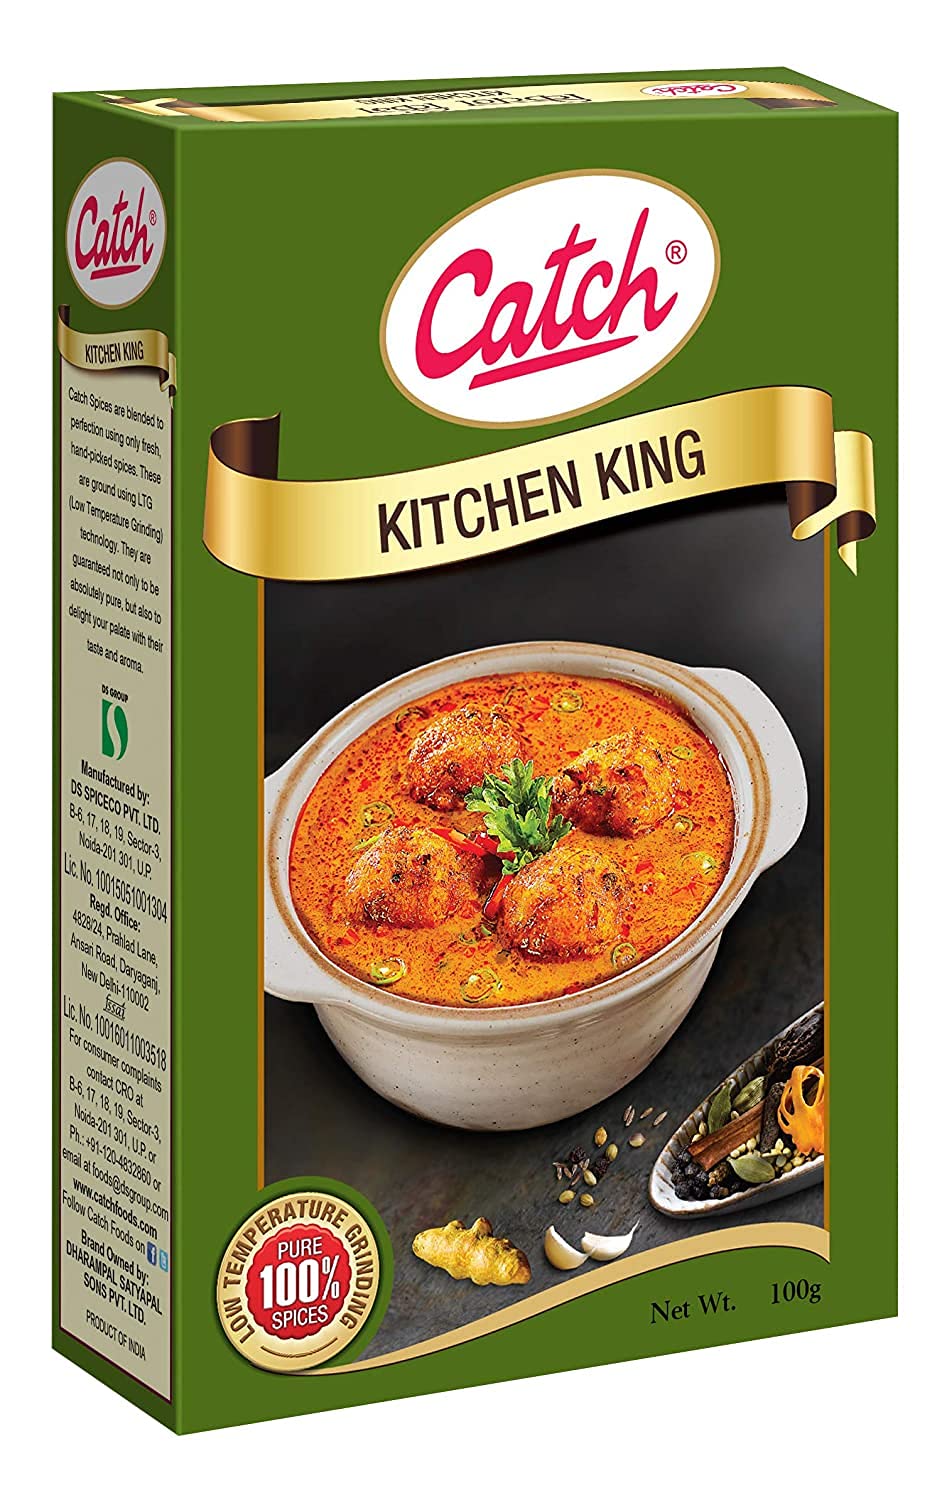 Catch Kitchen King Masala Image